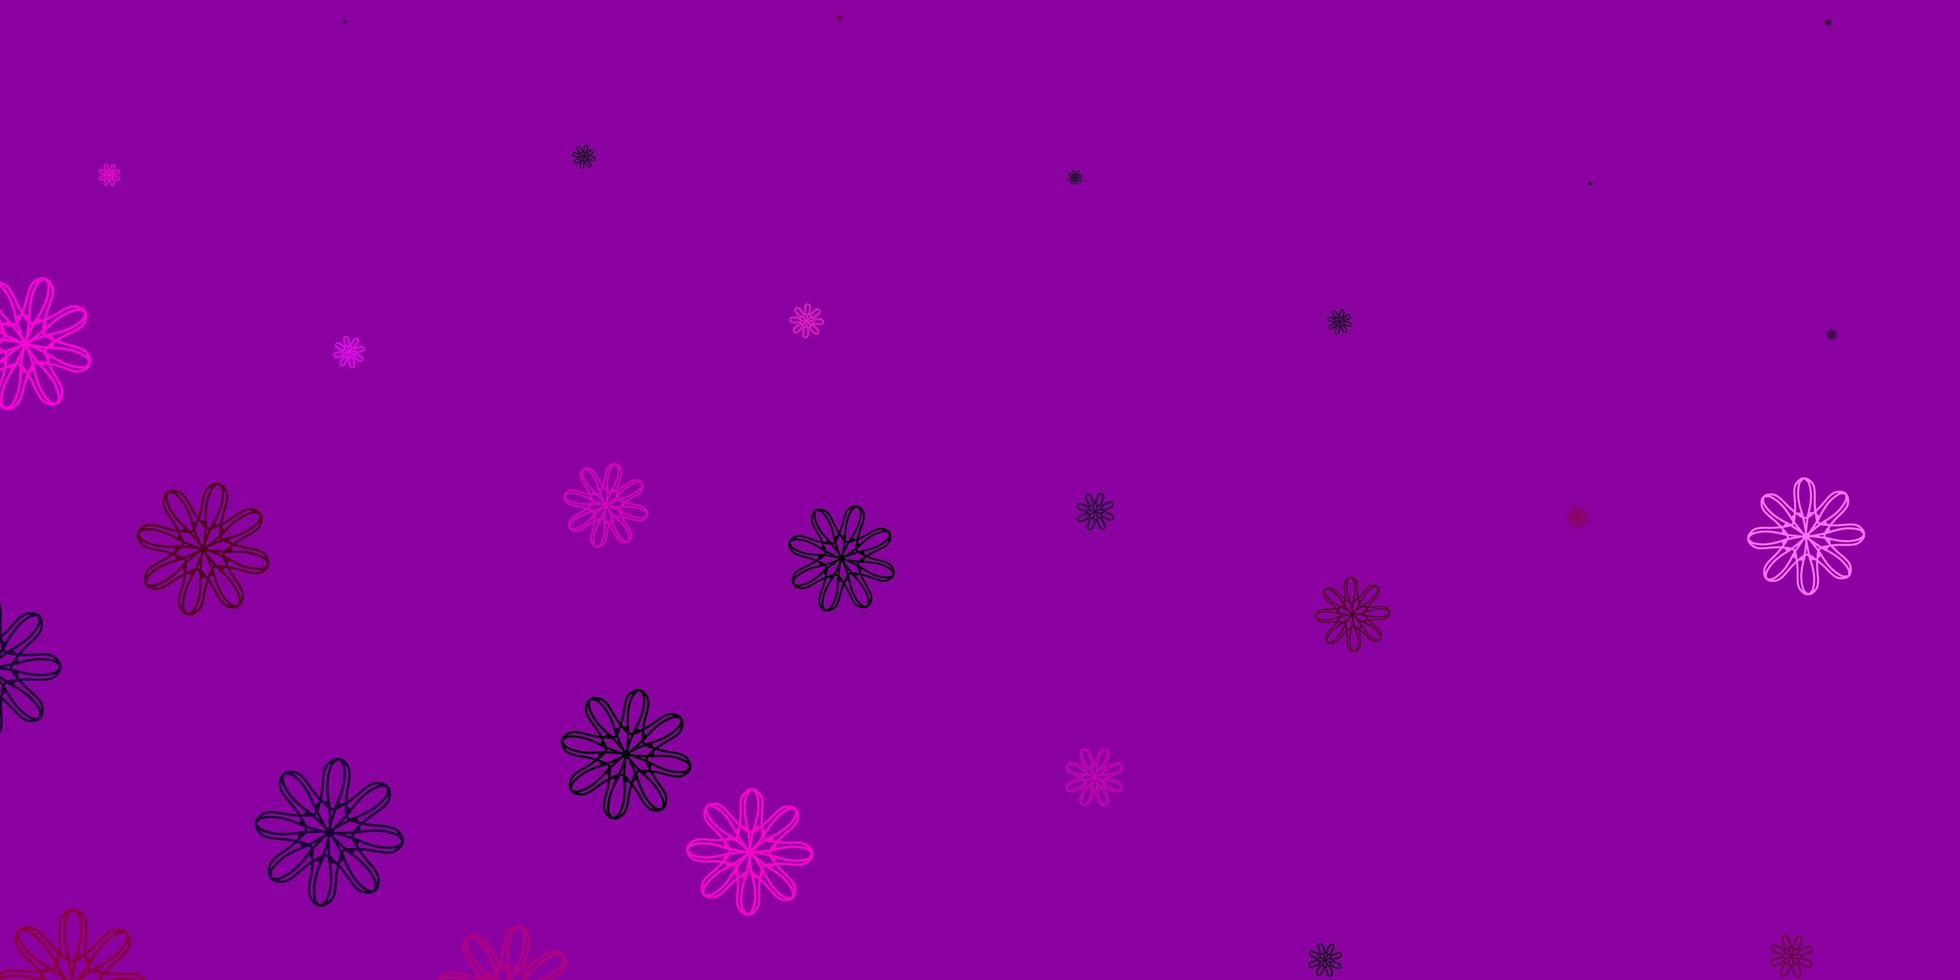 lichtpaars, roze vectorkrabbelpatroon met bloemen. vector